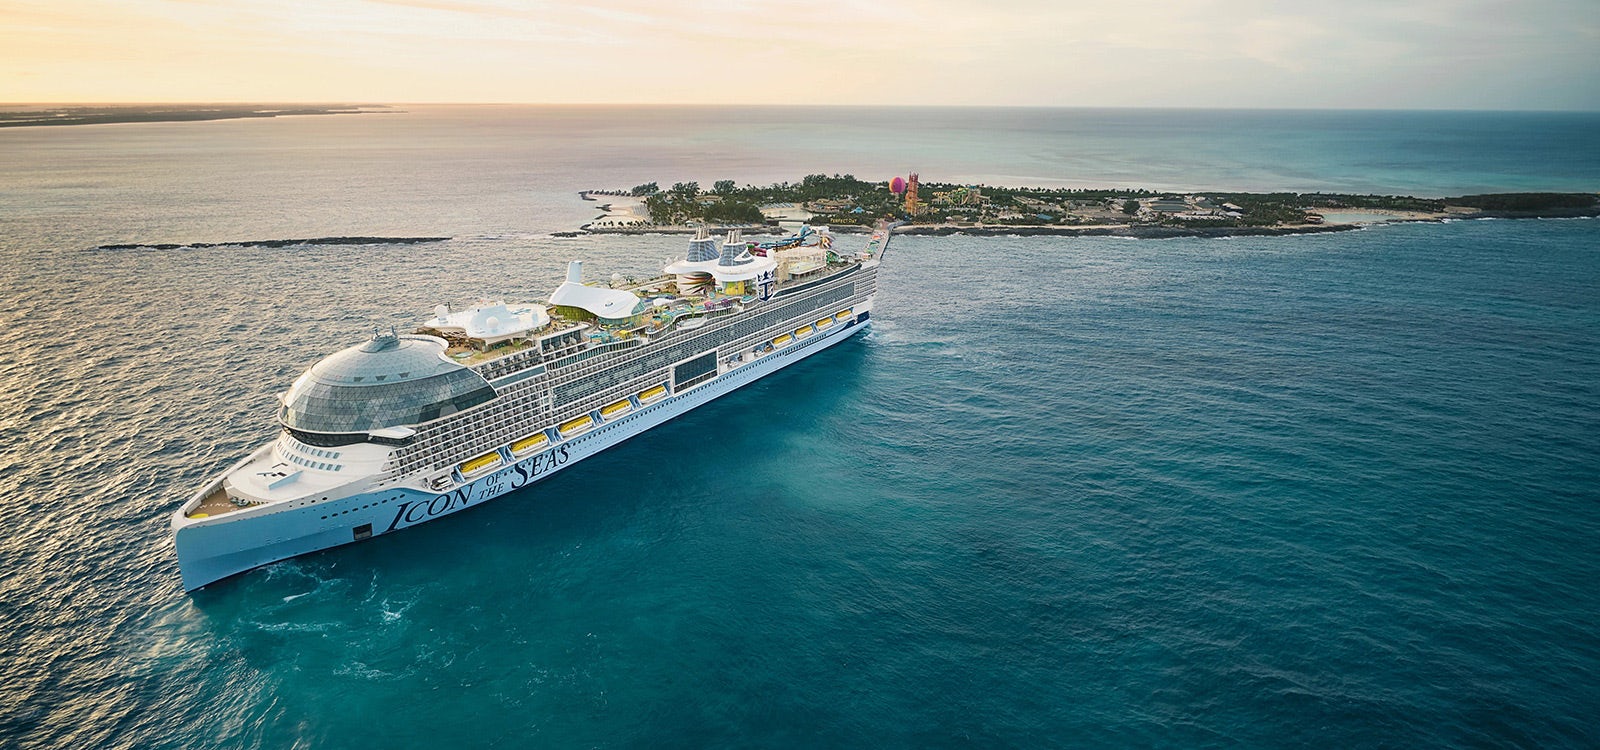 Top Villas Cruise services